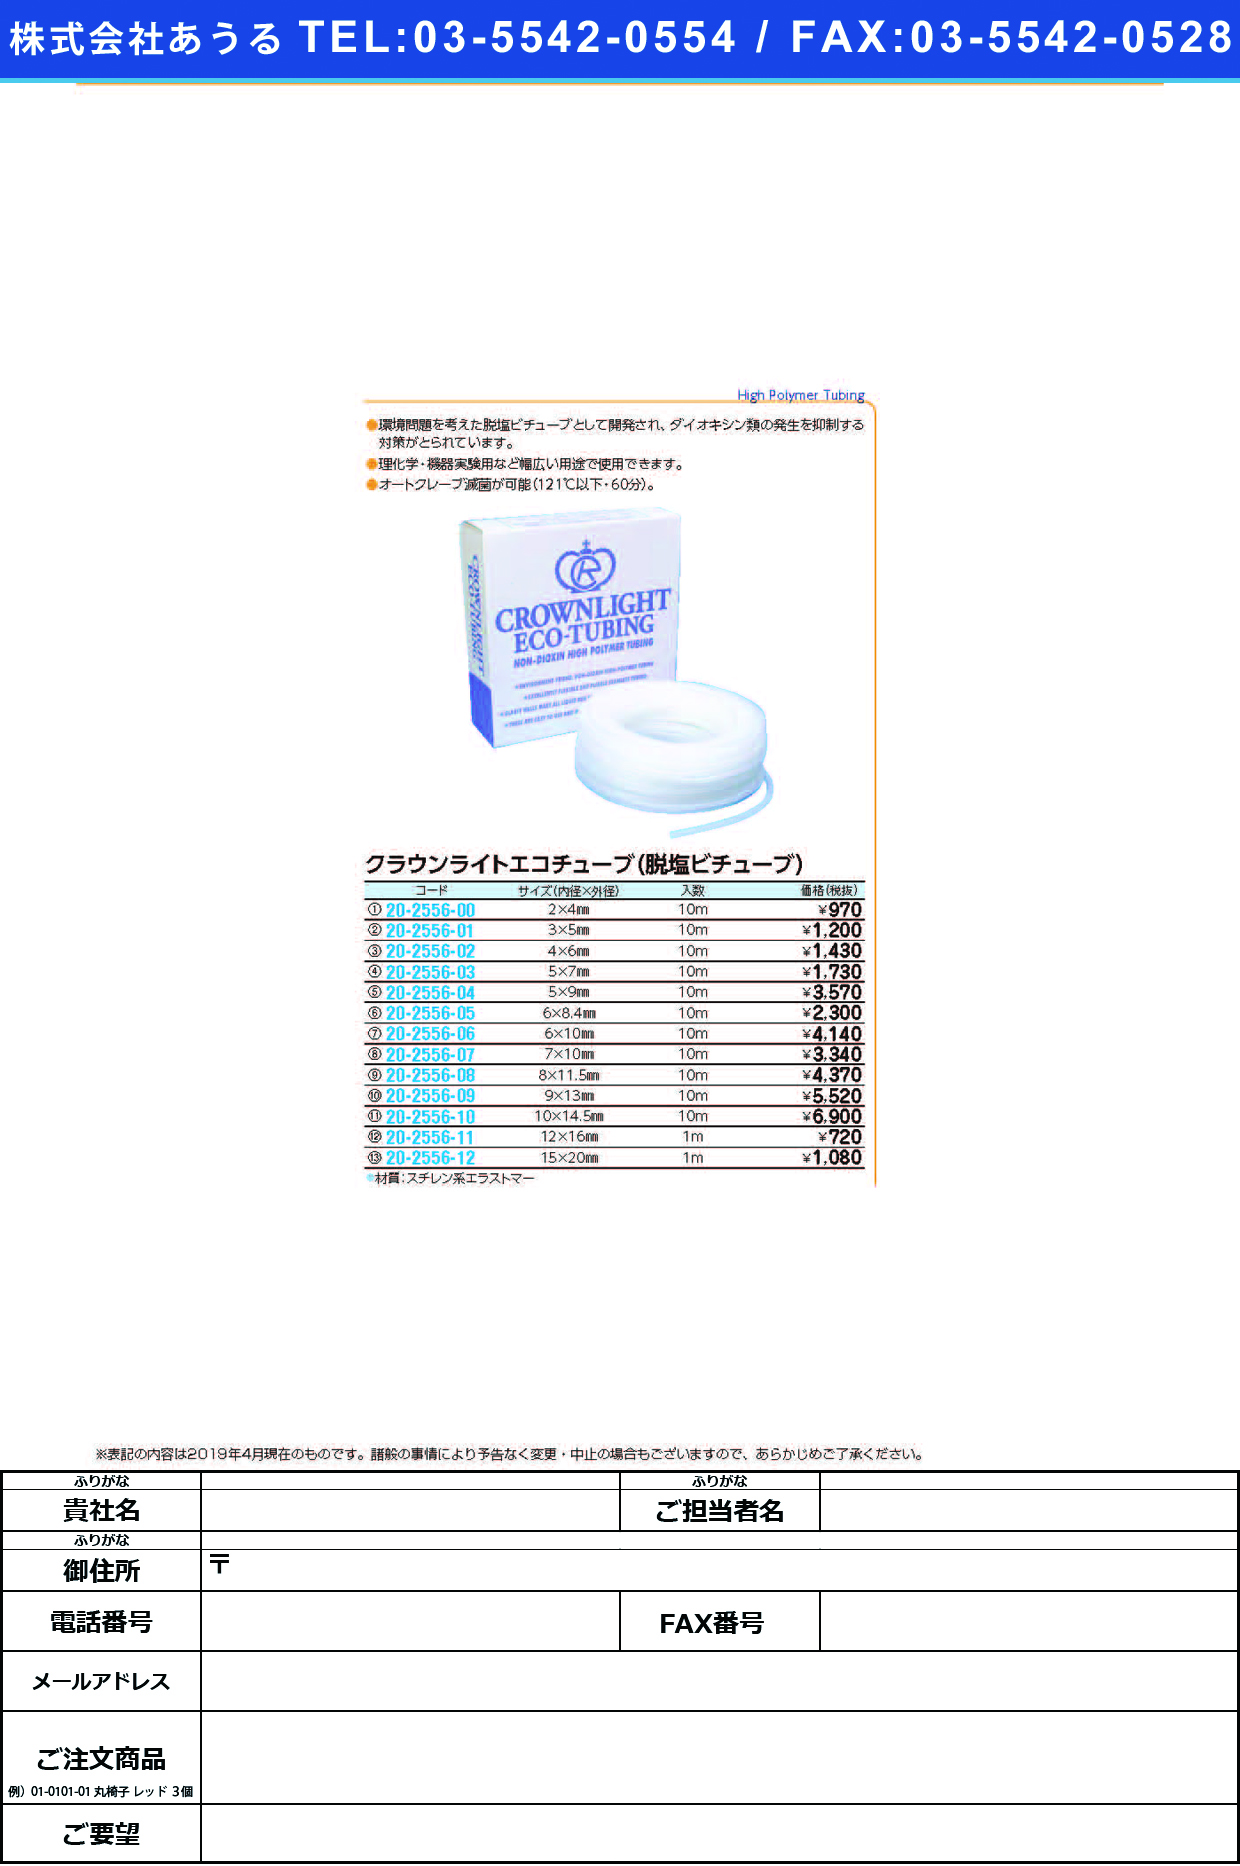 (20-2556-11)クラウンライトエコチューブ 12.0X16.0(1Mｲﾘ) ｸﾗｳﾝﾗｲﾄｴｺﾁｭｰﾌﾞ【1袋単位】【2019年カタログ商品】